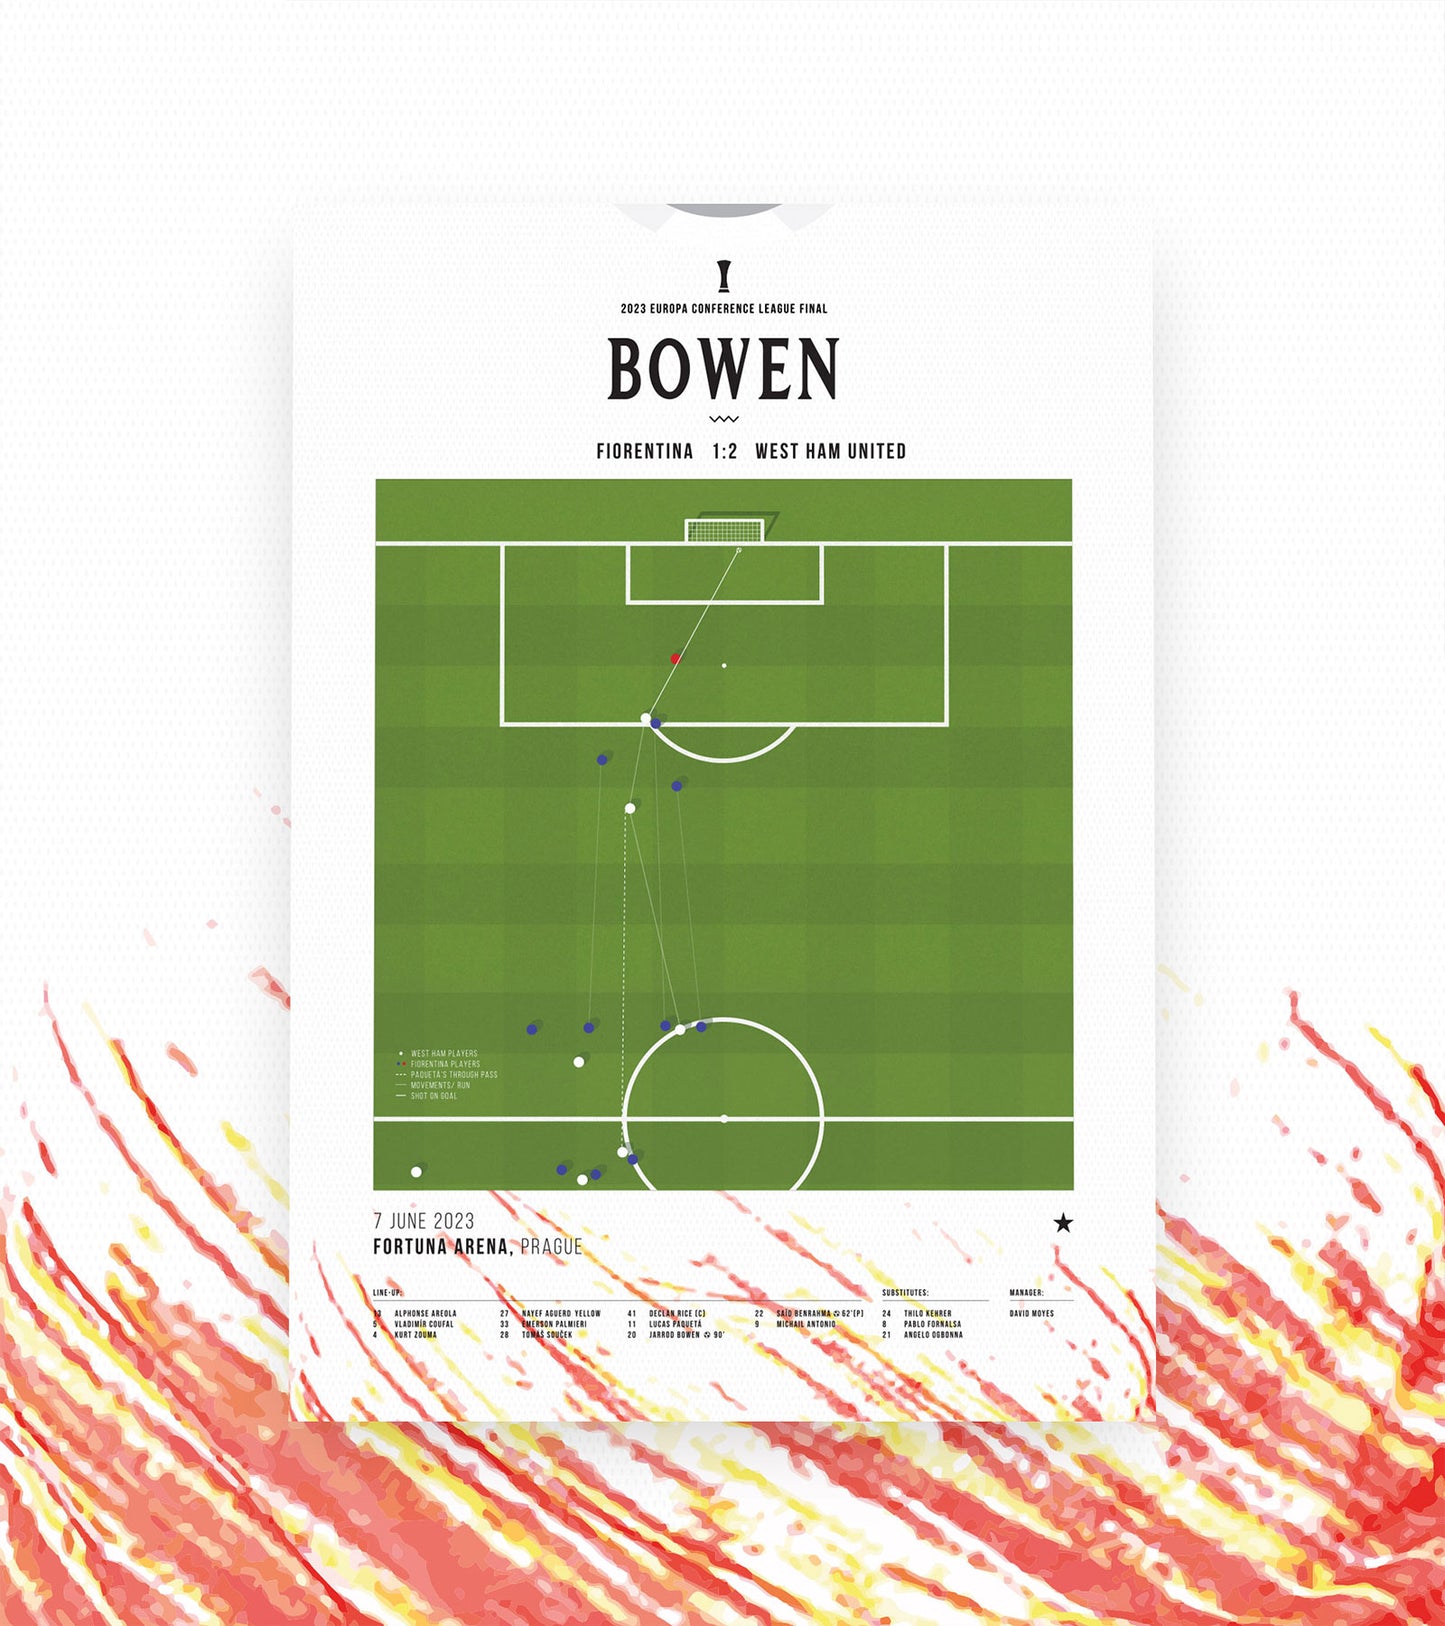 El gol inolvidable de Bowen en la Final de la Conference League